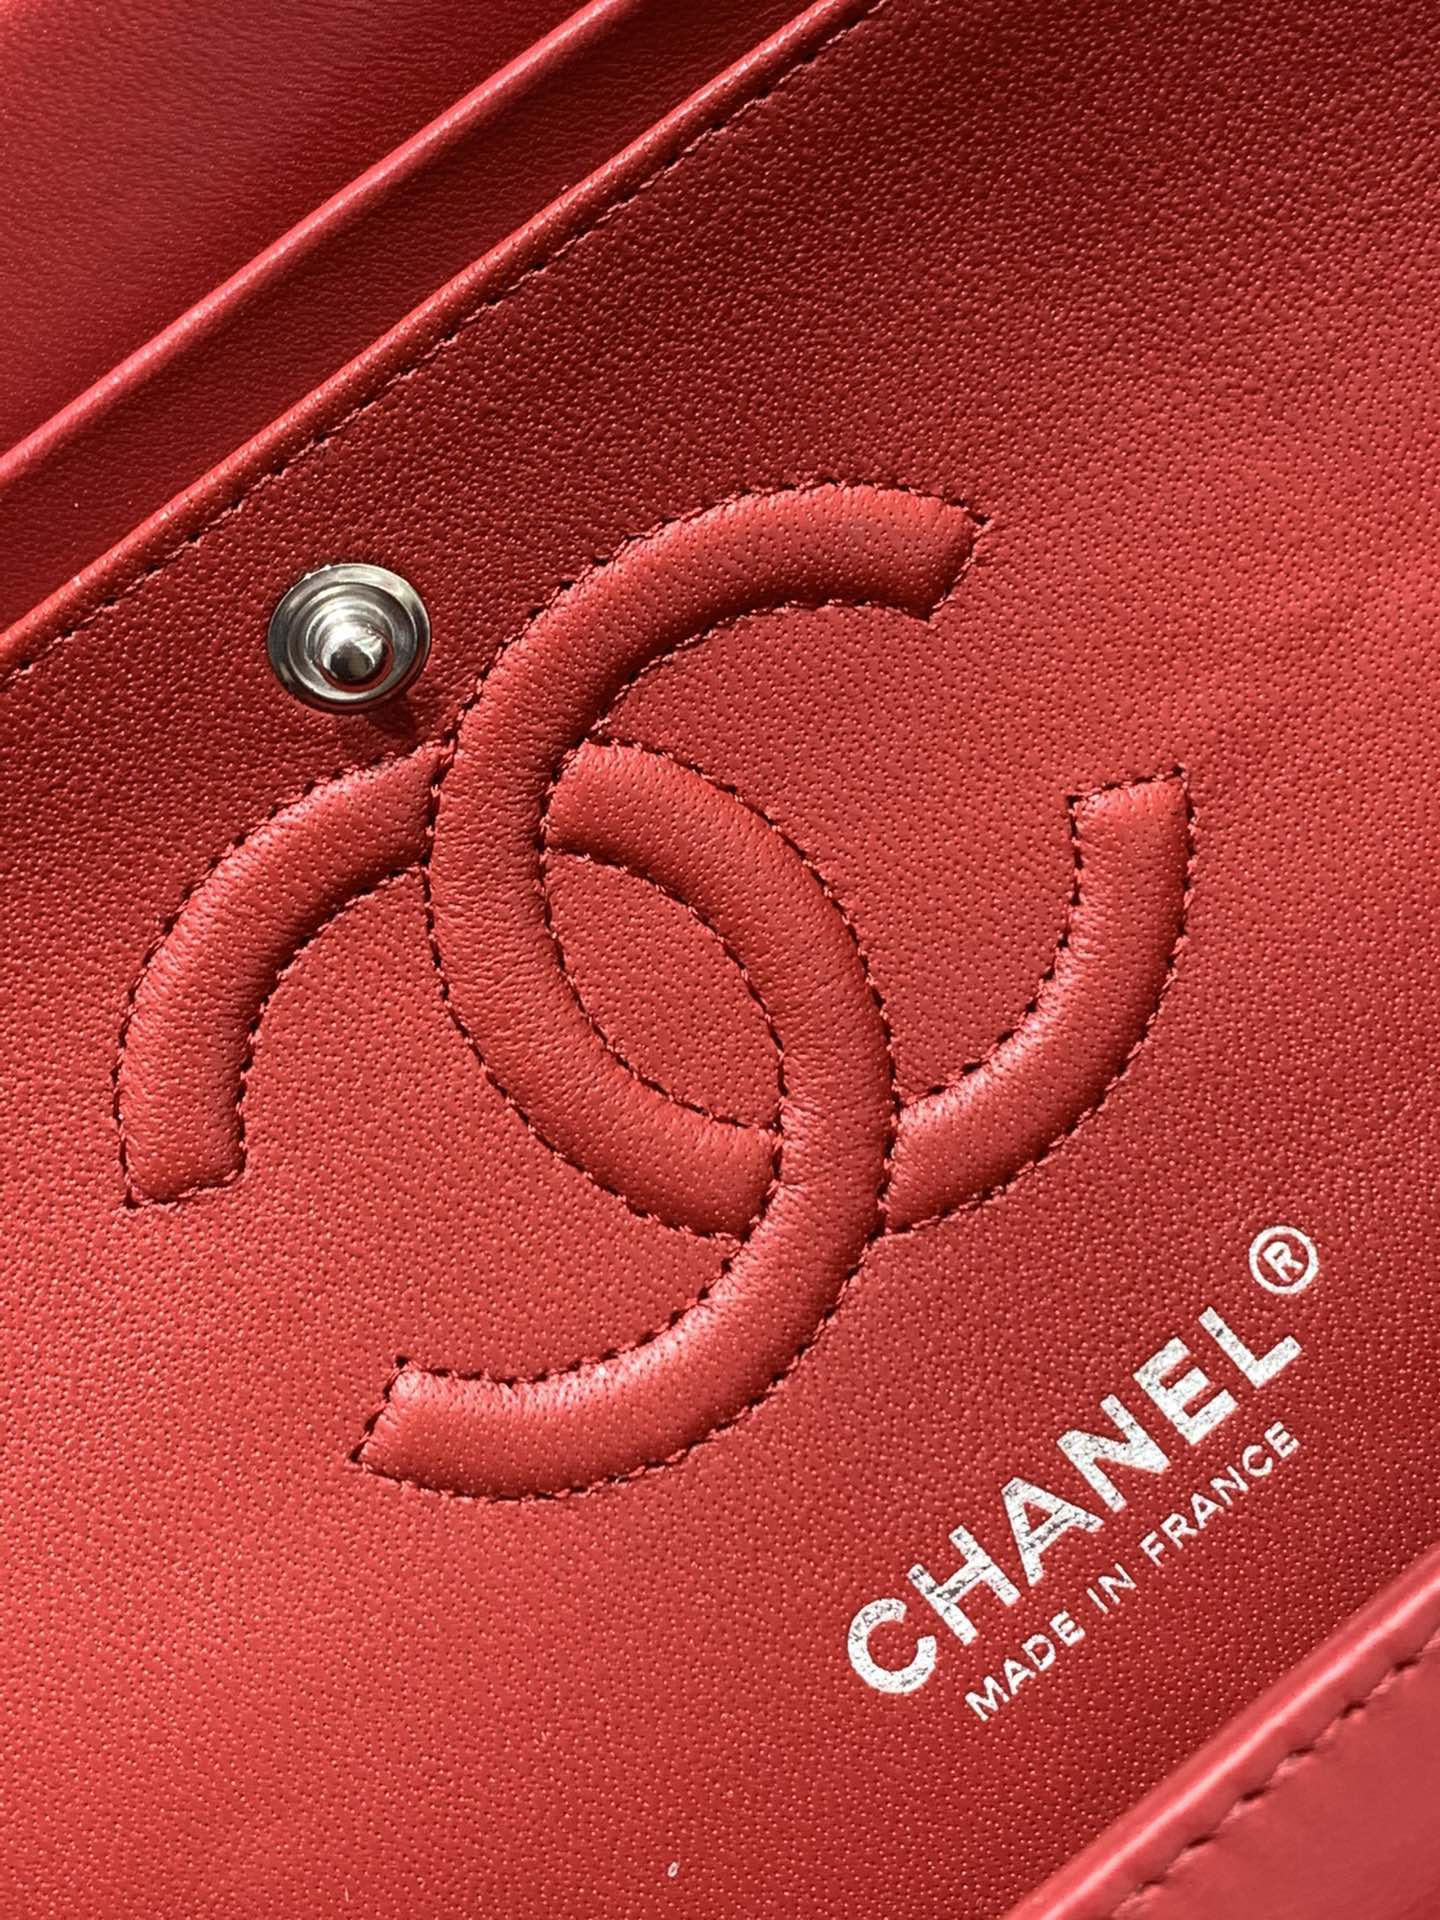 升级版带芯片【真品级】 Chanel CF  原厂bodin joyeux 羔羊皮 2021新颜色 新酒红 银扣